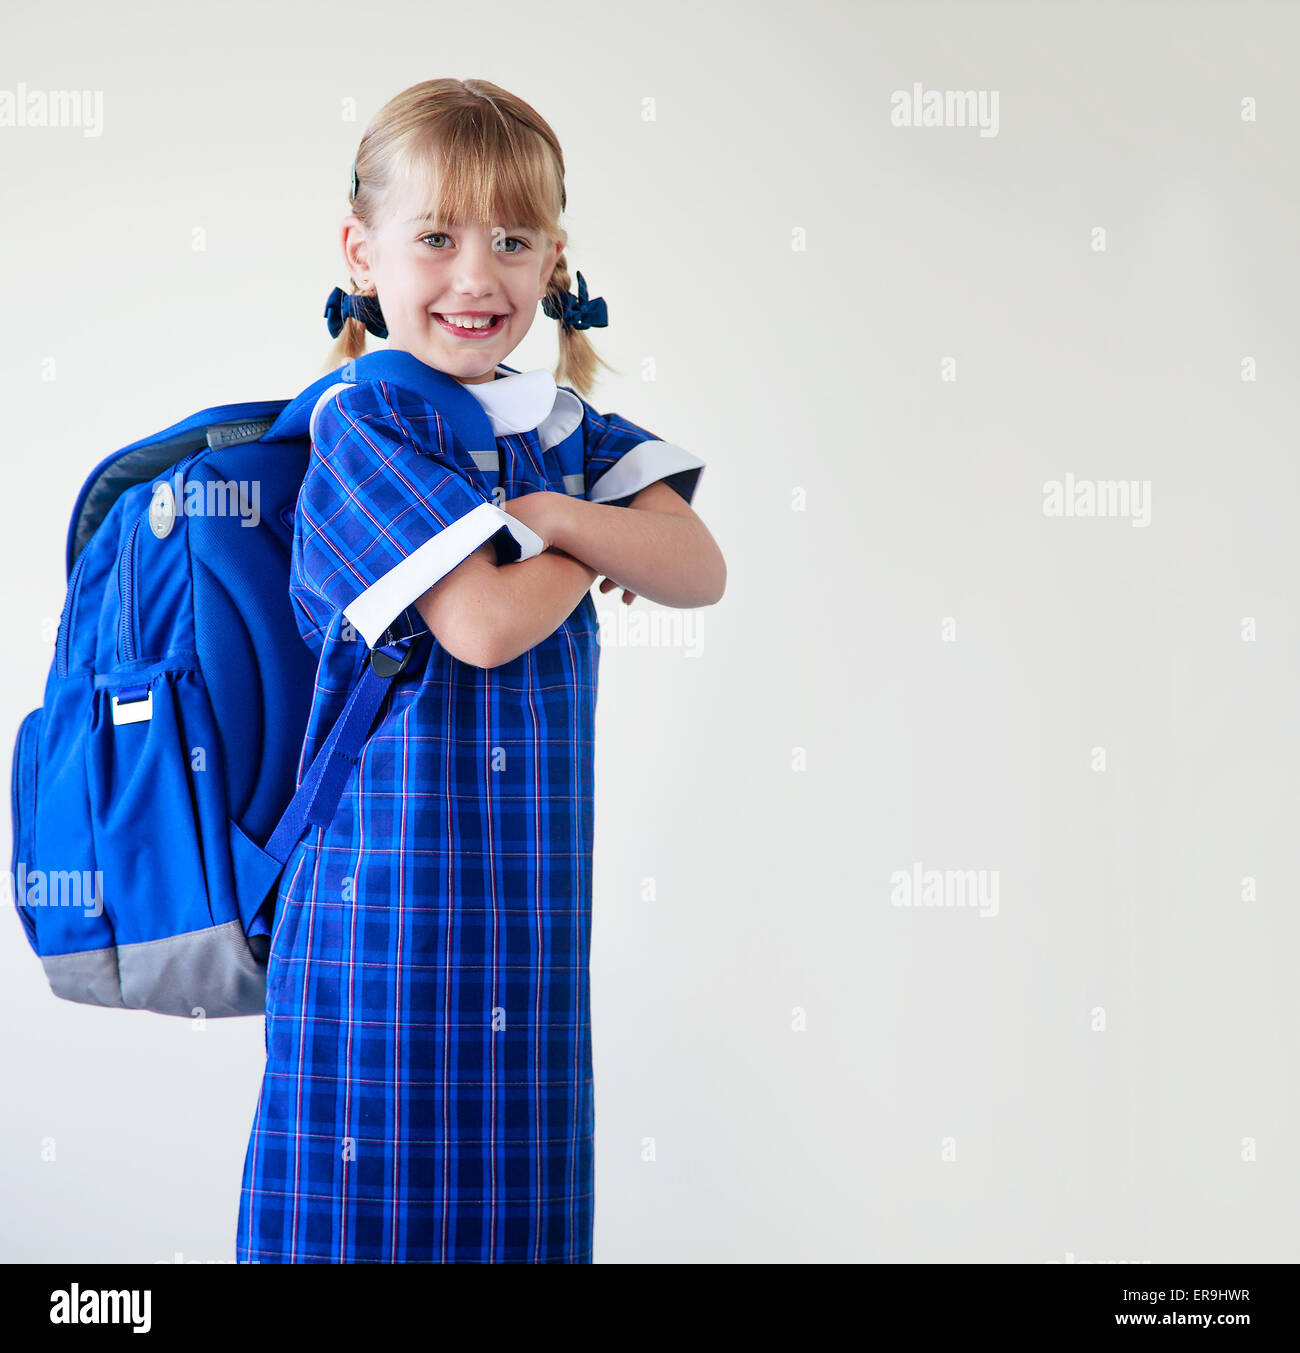 Petite fille vêtue de son uniforme scolaire sac à dos et prêt à aller à l'école Banque D'Images